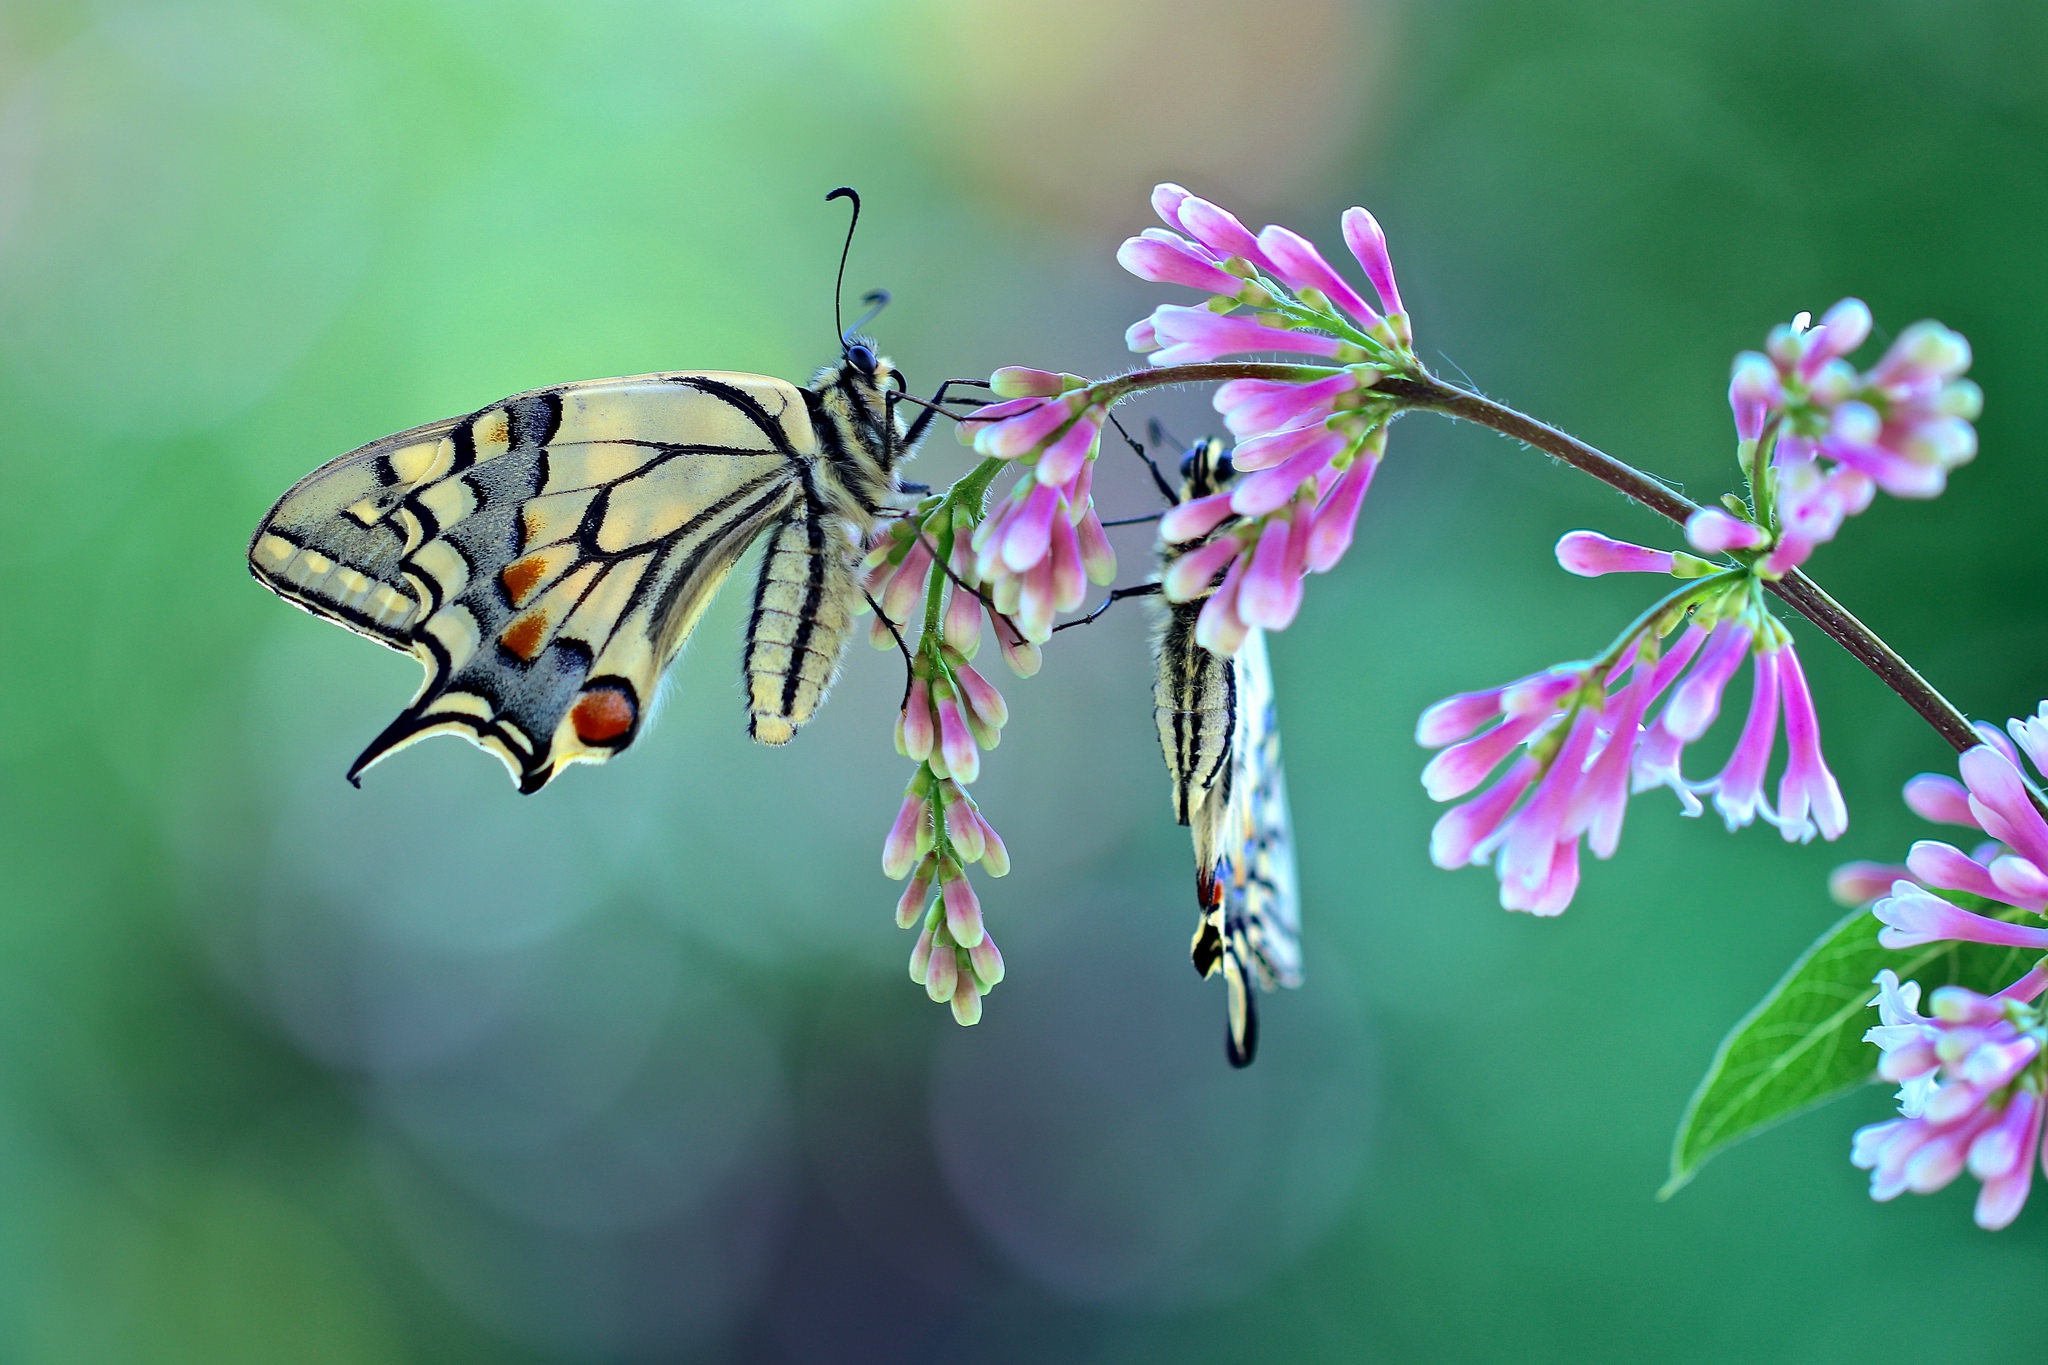 Descarga gratuita de fondo de pantalla para móvil de Animales, Flor Rosa, Insecto, Mariposa, Macrofotografía.